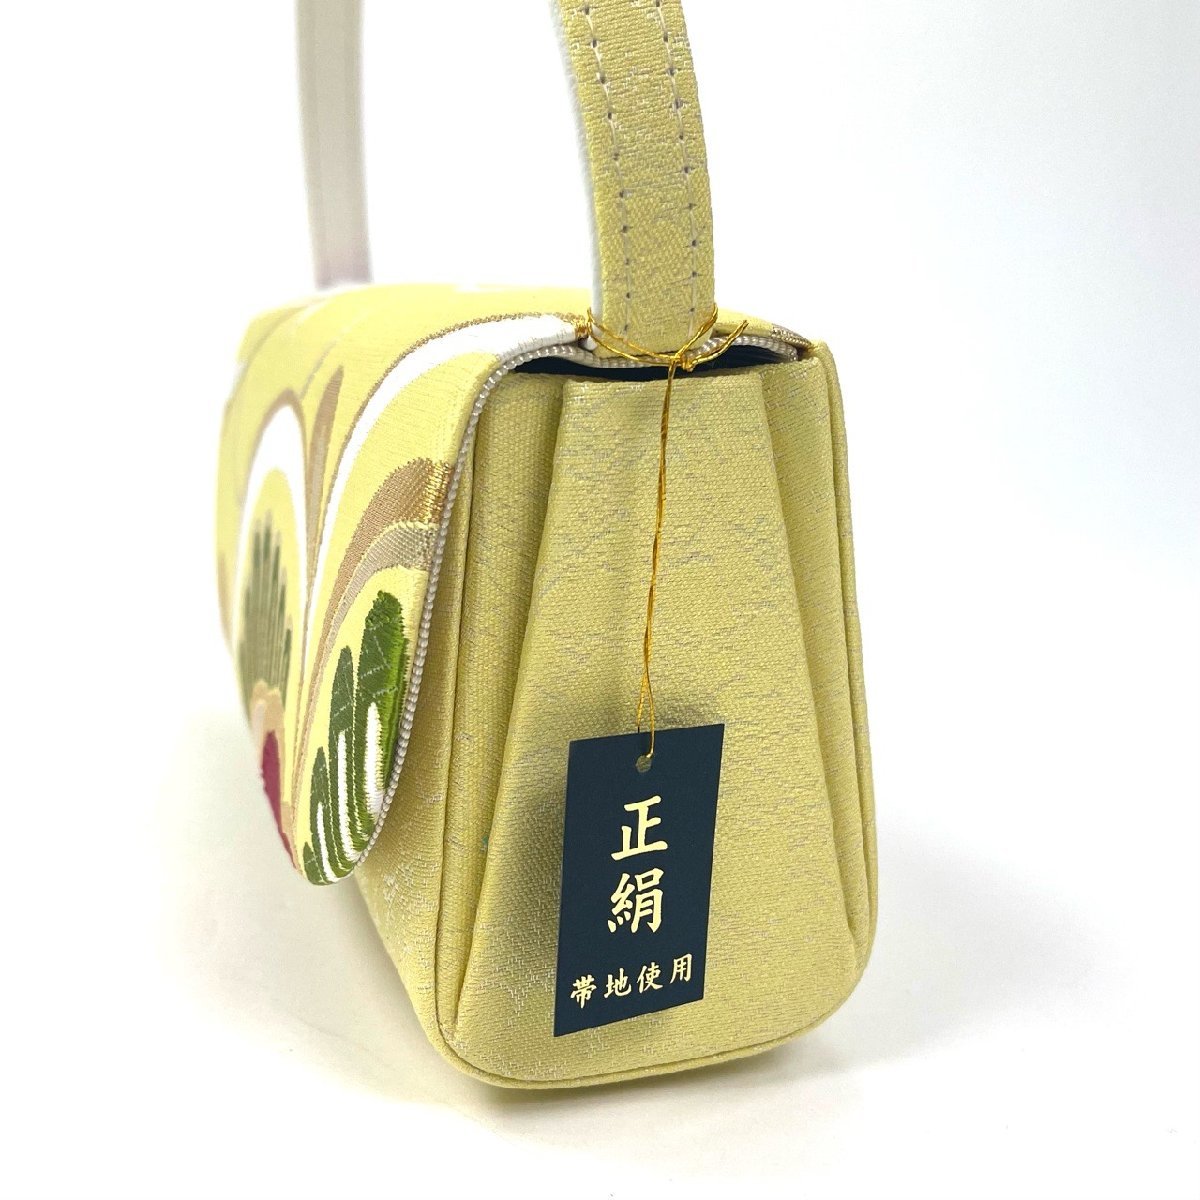  кимоно .. новый товар кимоно с длинными рукавами для высококлассный zori сумка комплект натуральный шелк obi земля желтый цвет Gold фиолетовый пастель толщина низ hakama церемония окончания .. формальный M L не использовался прекрасный товар 